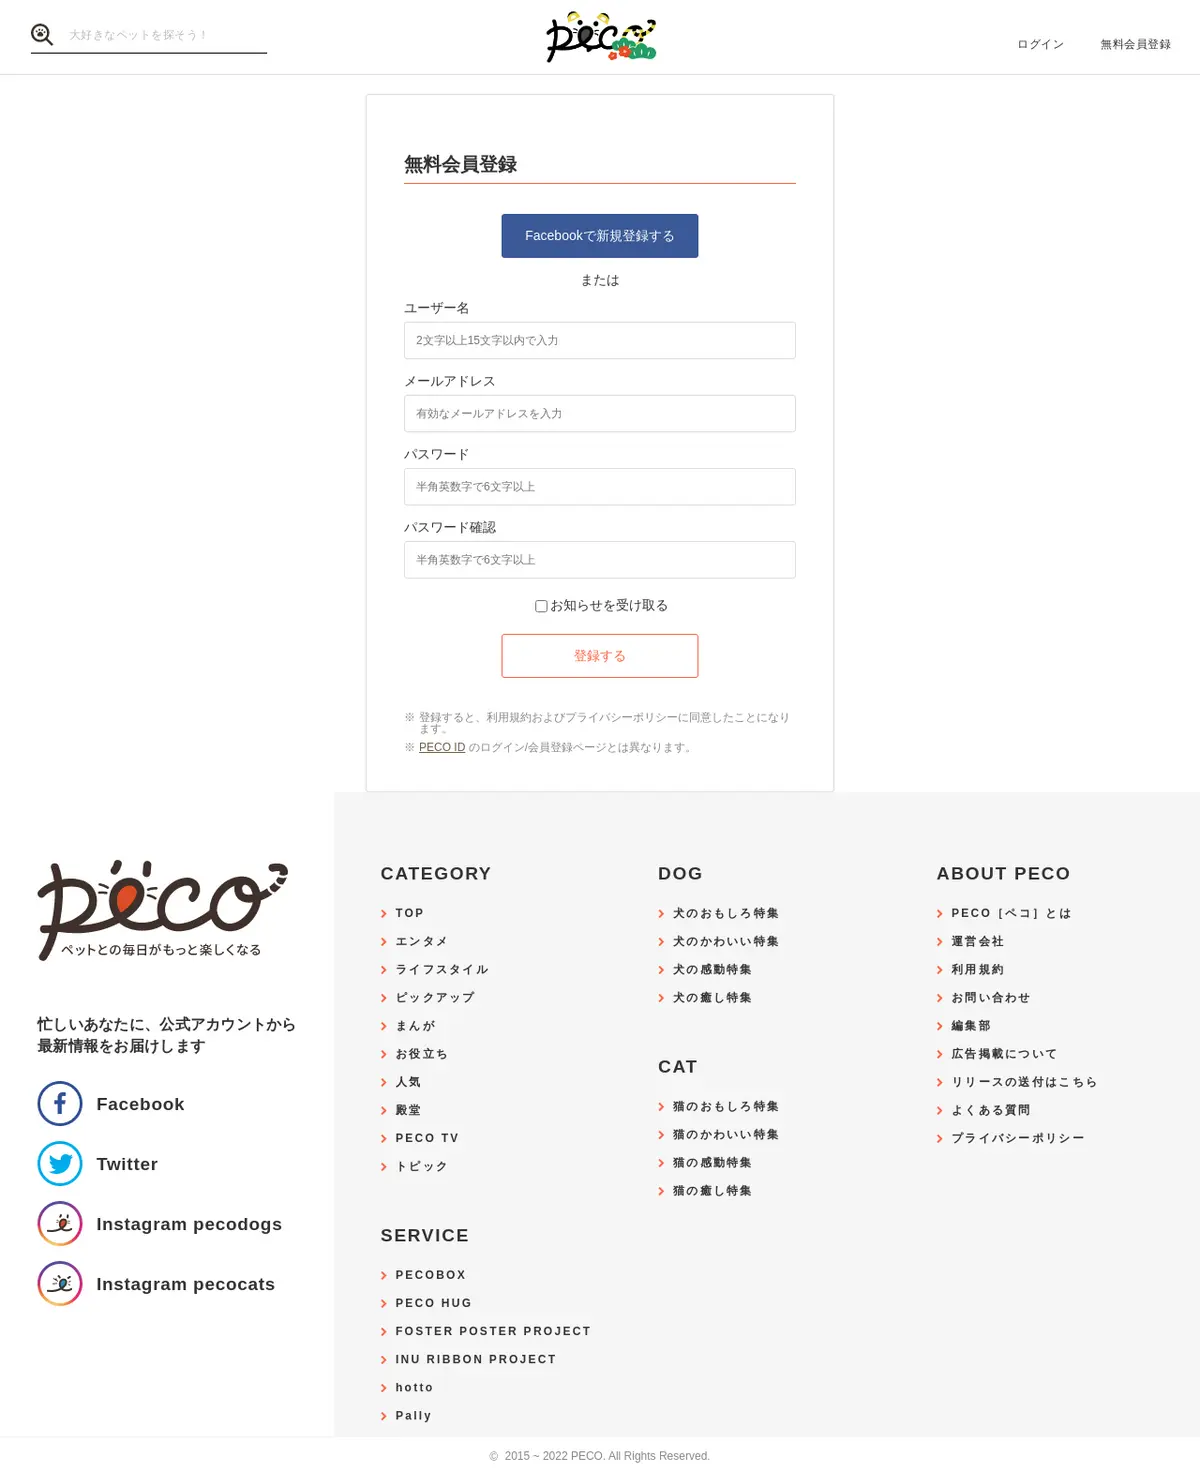 キャプチャ画面 会社名:株式会社PECOプロジェクト名:PECO 画面名:会員登録 デバイス名:PCカテゴリ:動物・ペットタグ:会員登録,PC